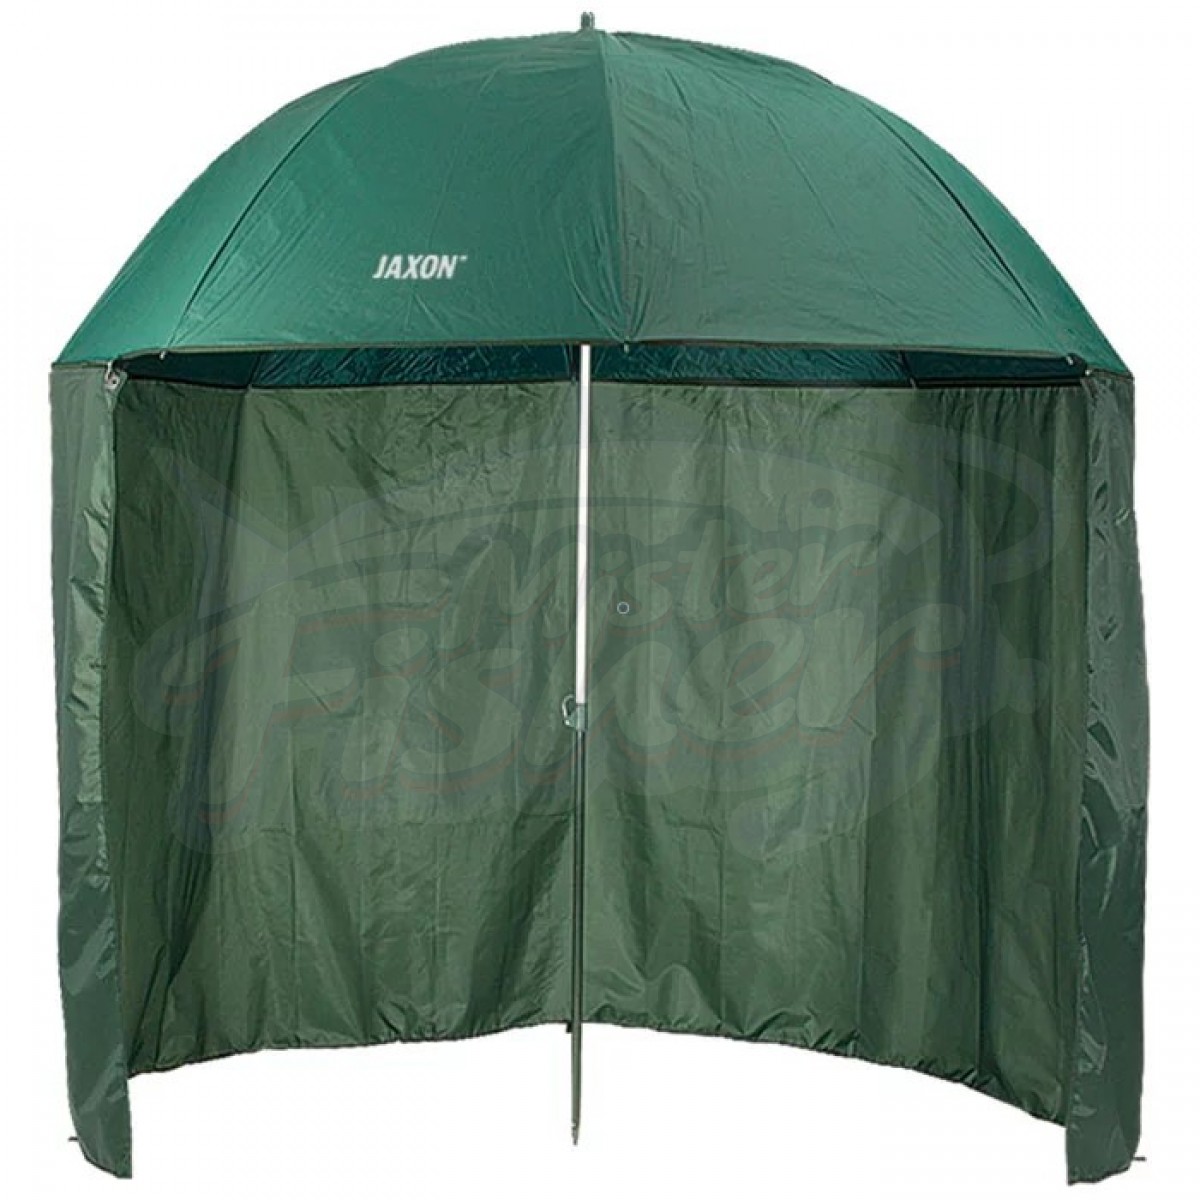 Палатки зонтичного типа. Зонт-палатка Jaxon 250cm. Зонт Traper 250cm. Зонт рыболовный Jaxon АК-plx150tx. Зонт Jaxon AK-kzs040 250 см.